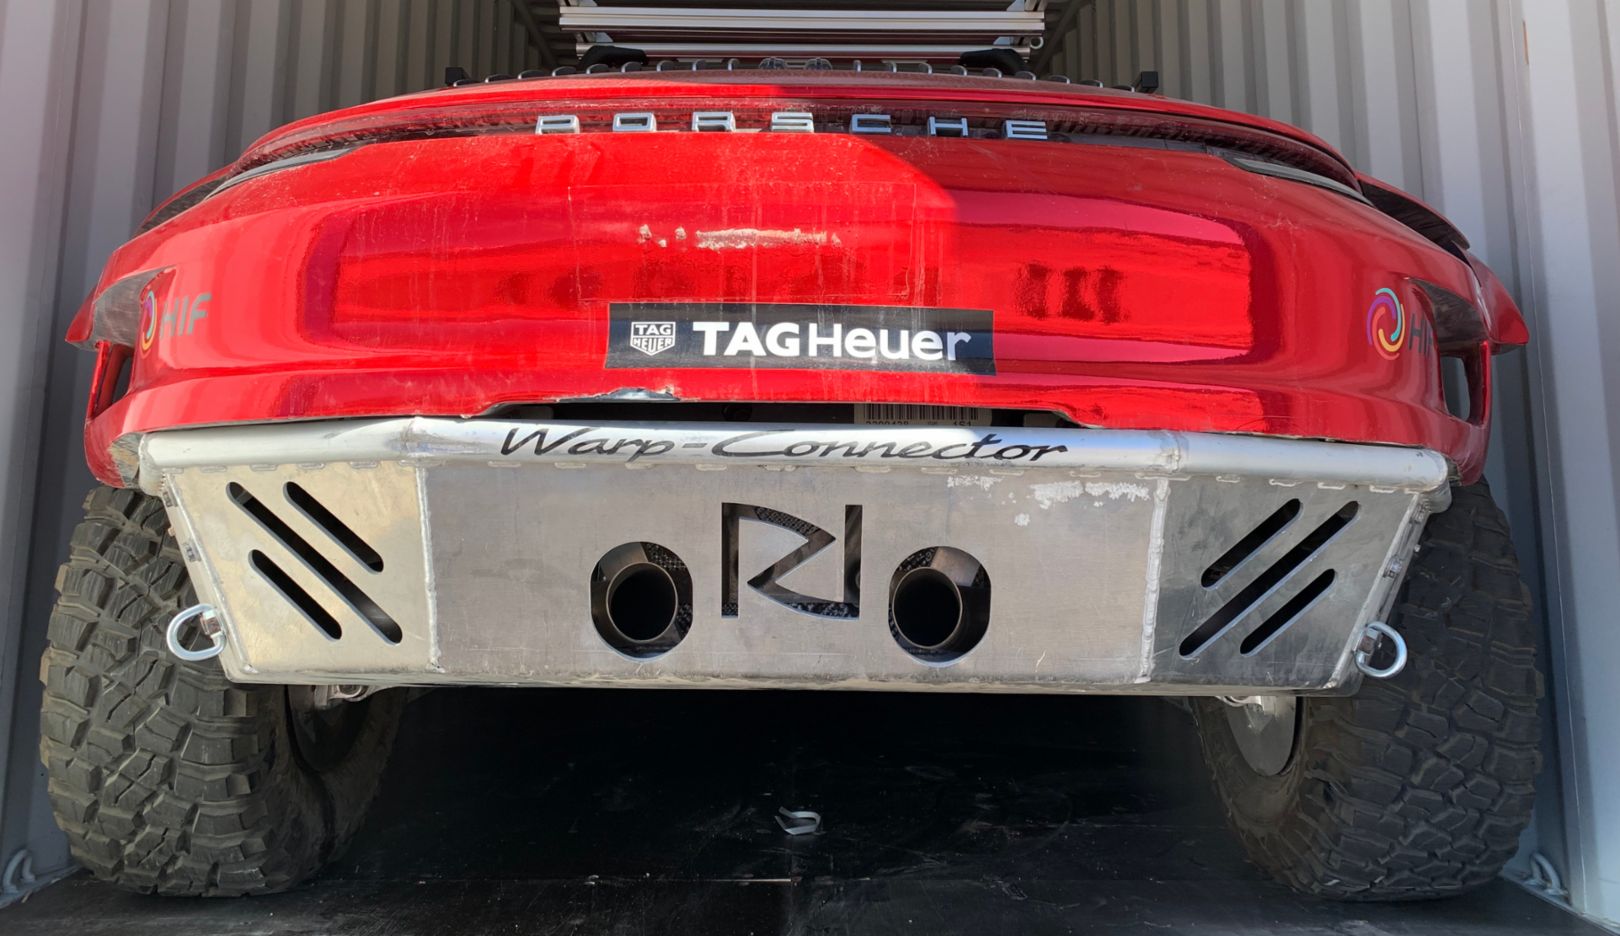 Imponujący widok z tyłu: napis Warp Connector wskazuje na system o tej samej nazwie. Pierwotnie miał być stosowany w Porsche 919 Hybrid (LMP1).